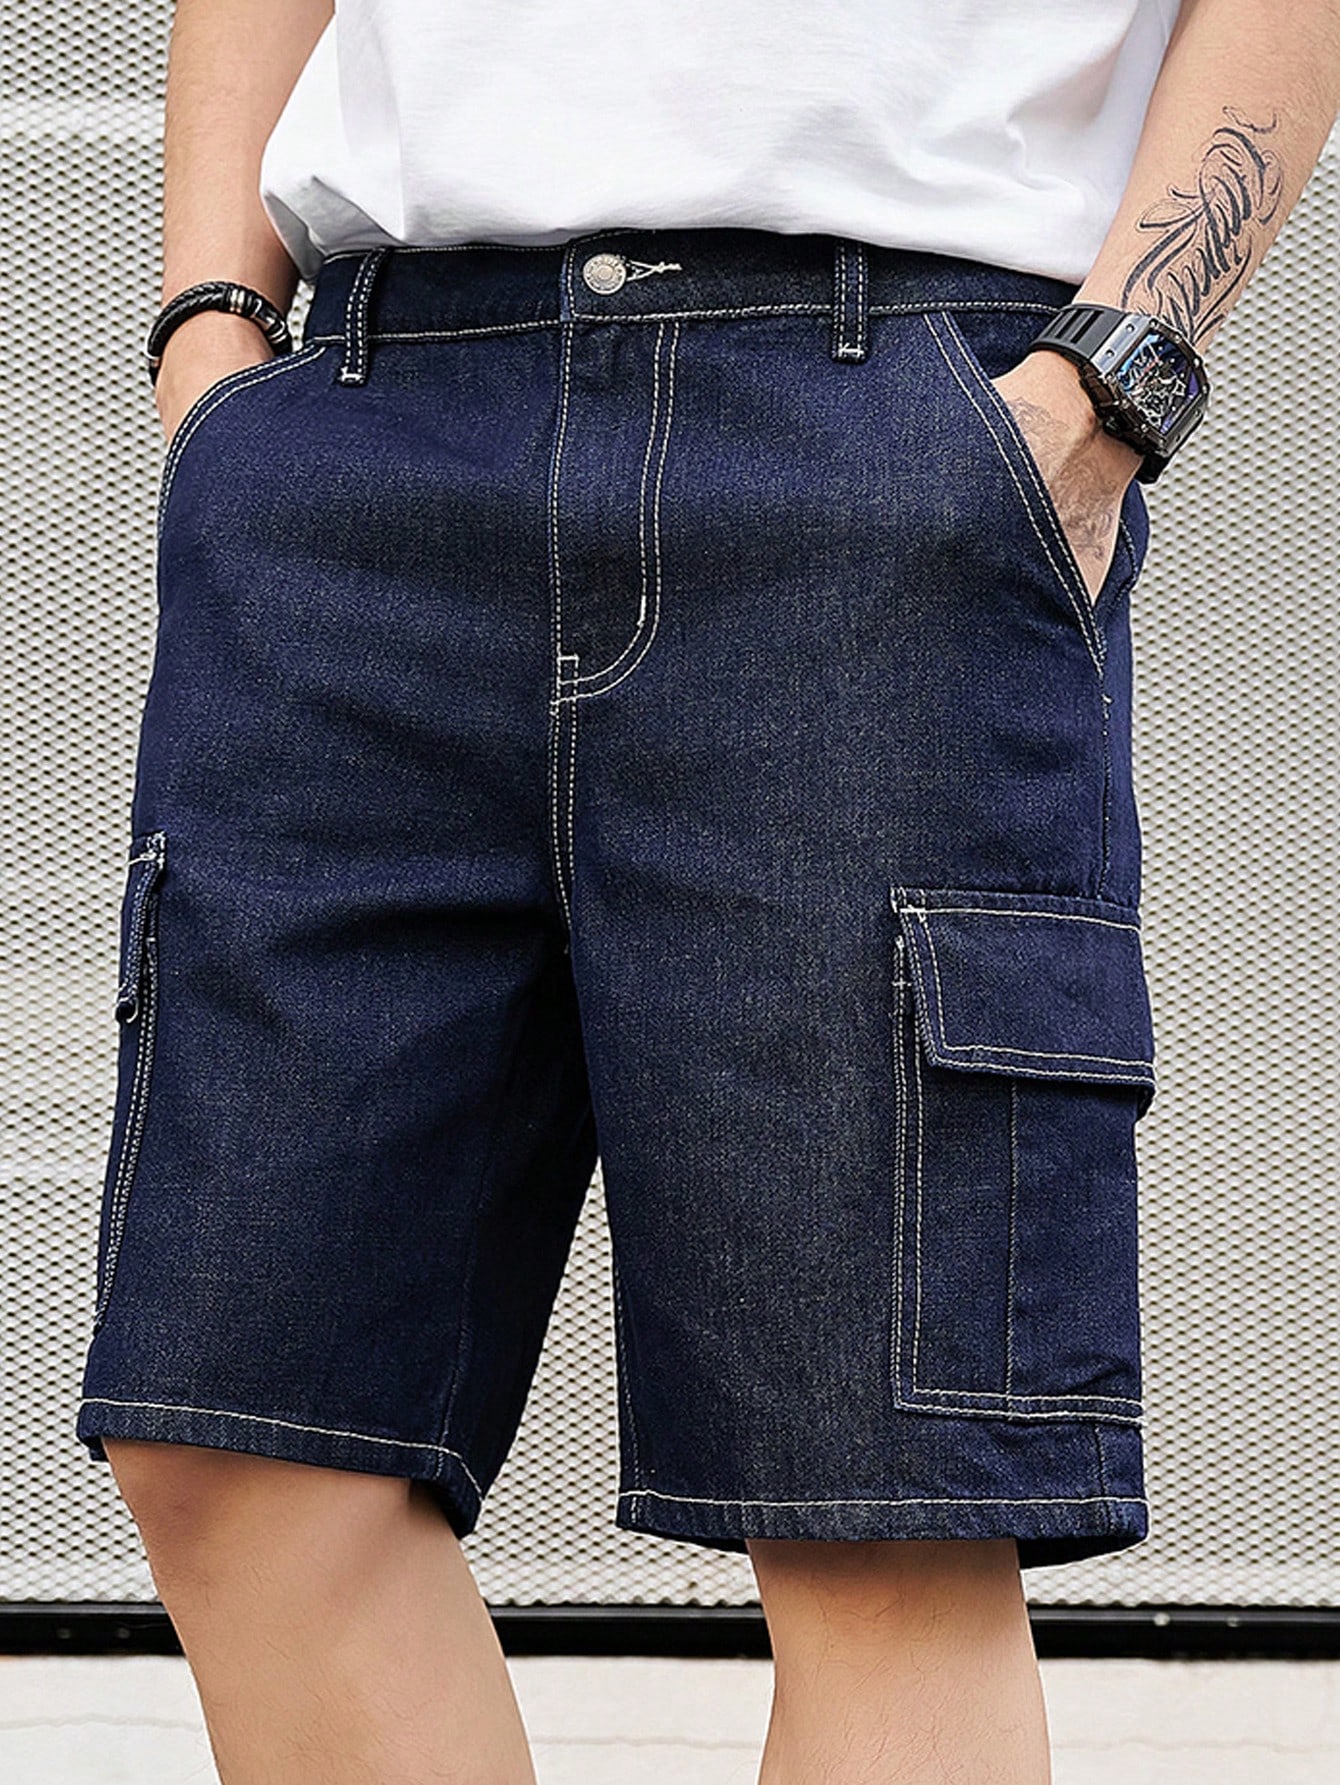 Мужские джинсовые шорты в стиле карго с диагональными карманами Manfinity Homme, синий шорты карго джинсовые button blue